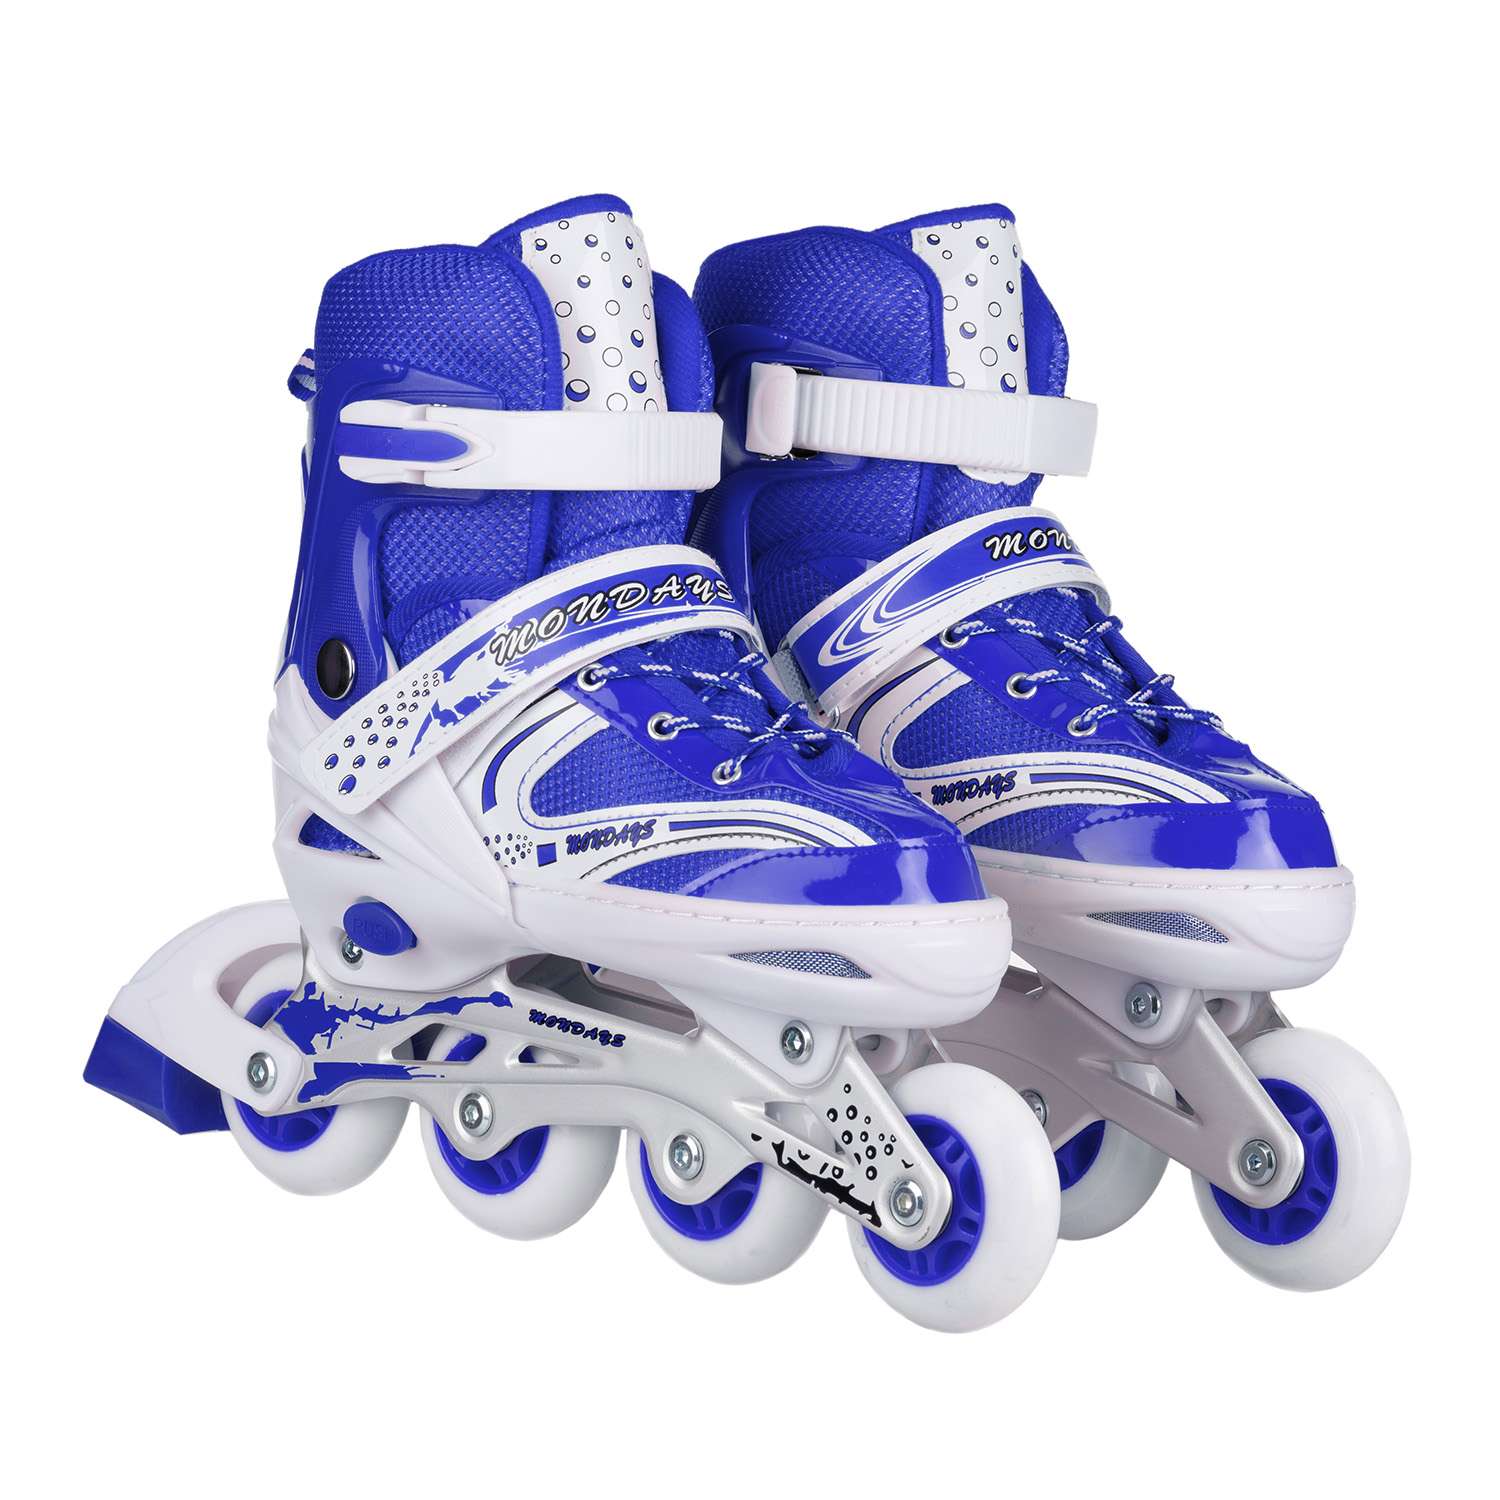 Роликовые коньки BABY STYLE синие раздвижные размер с 32 по 35M светящиеся колеса - фото 2